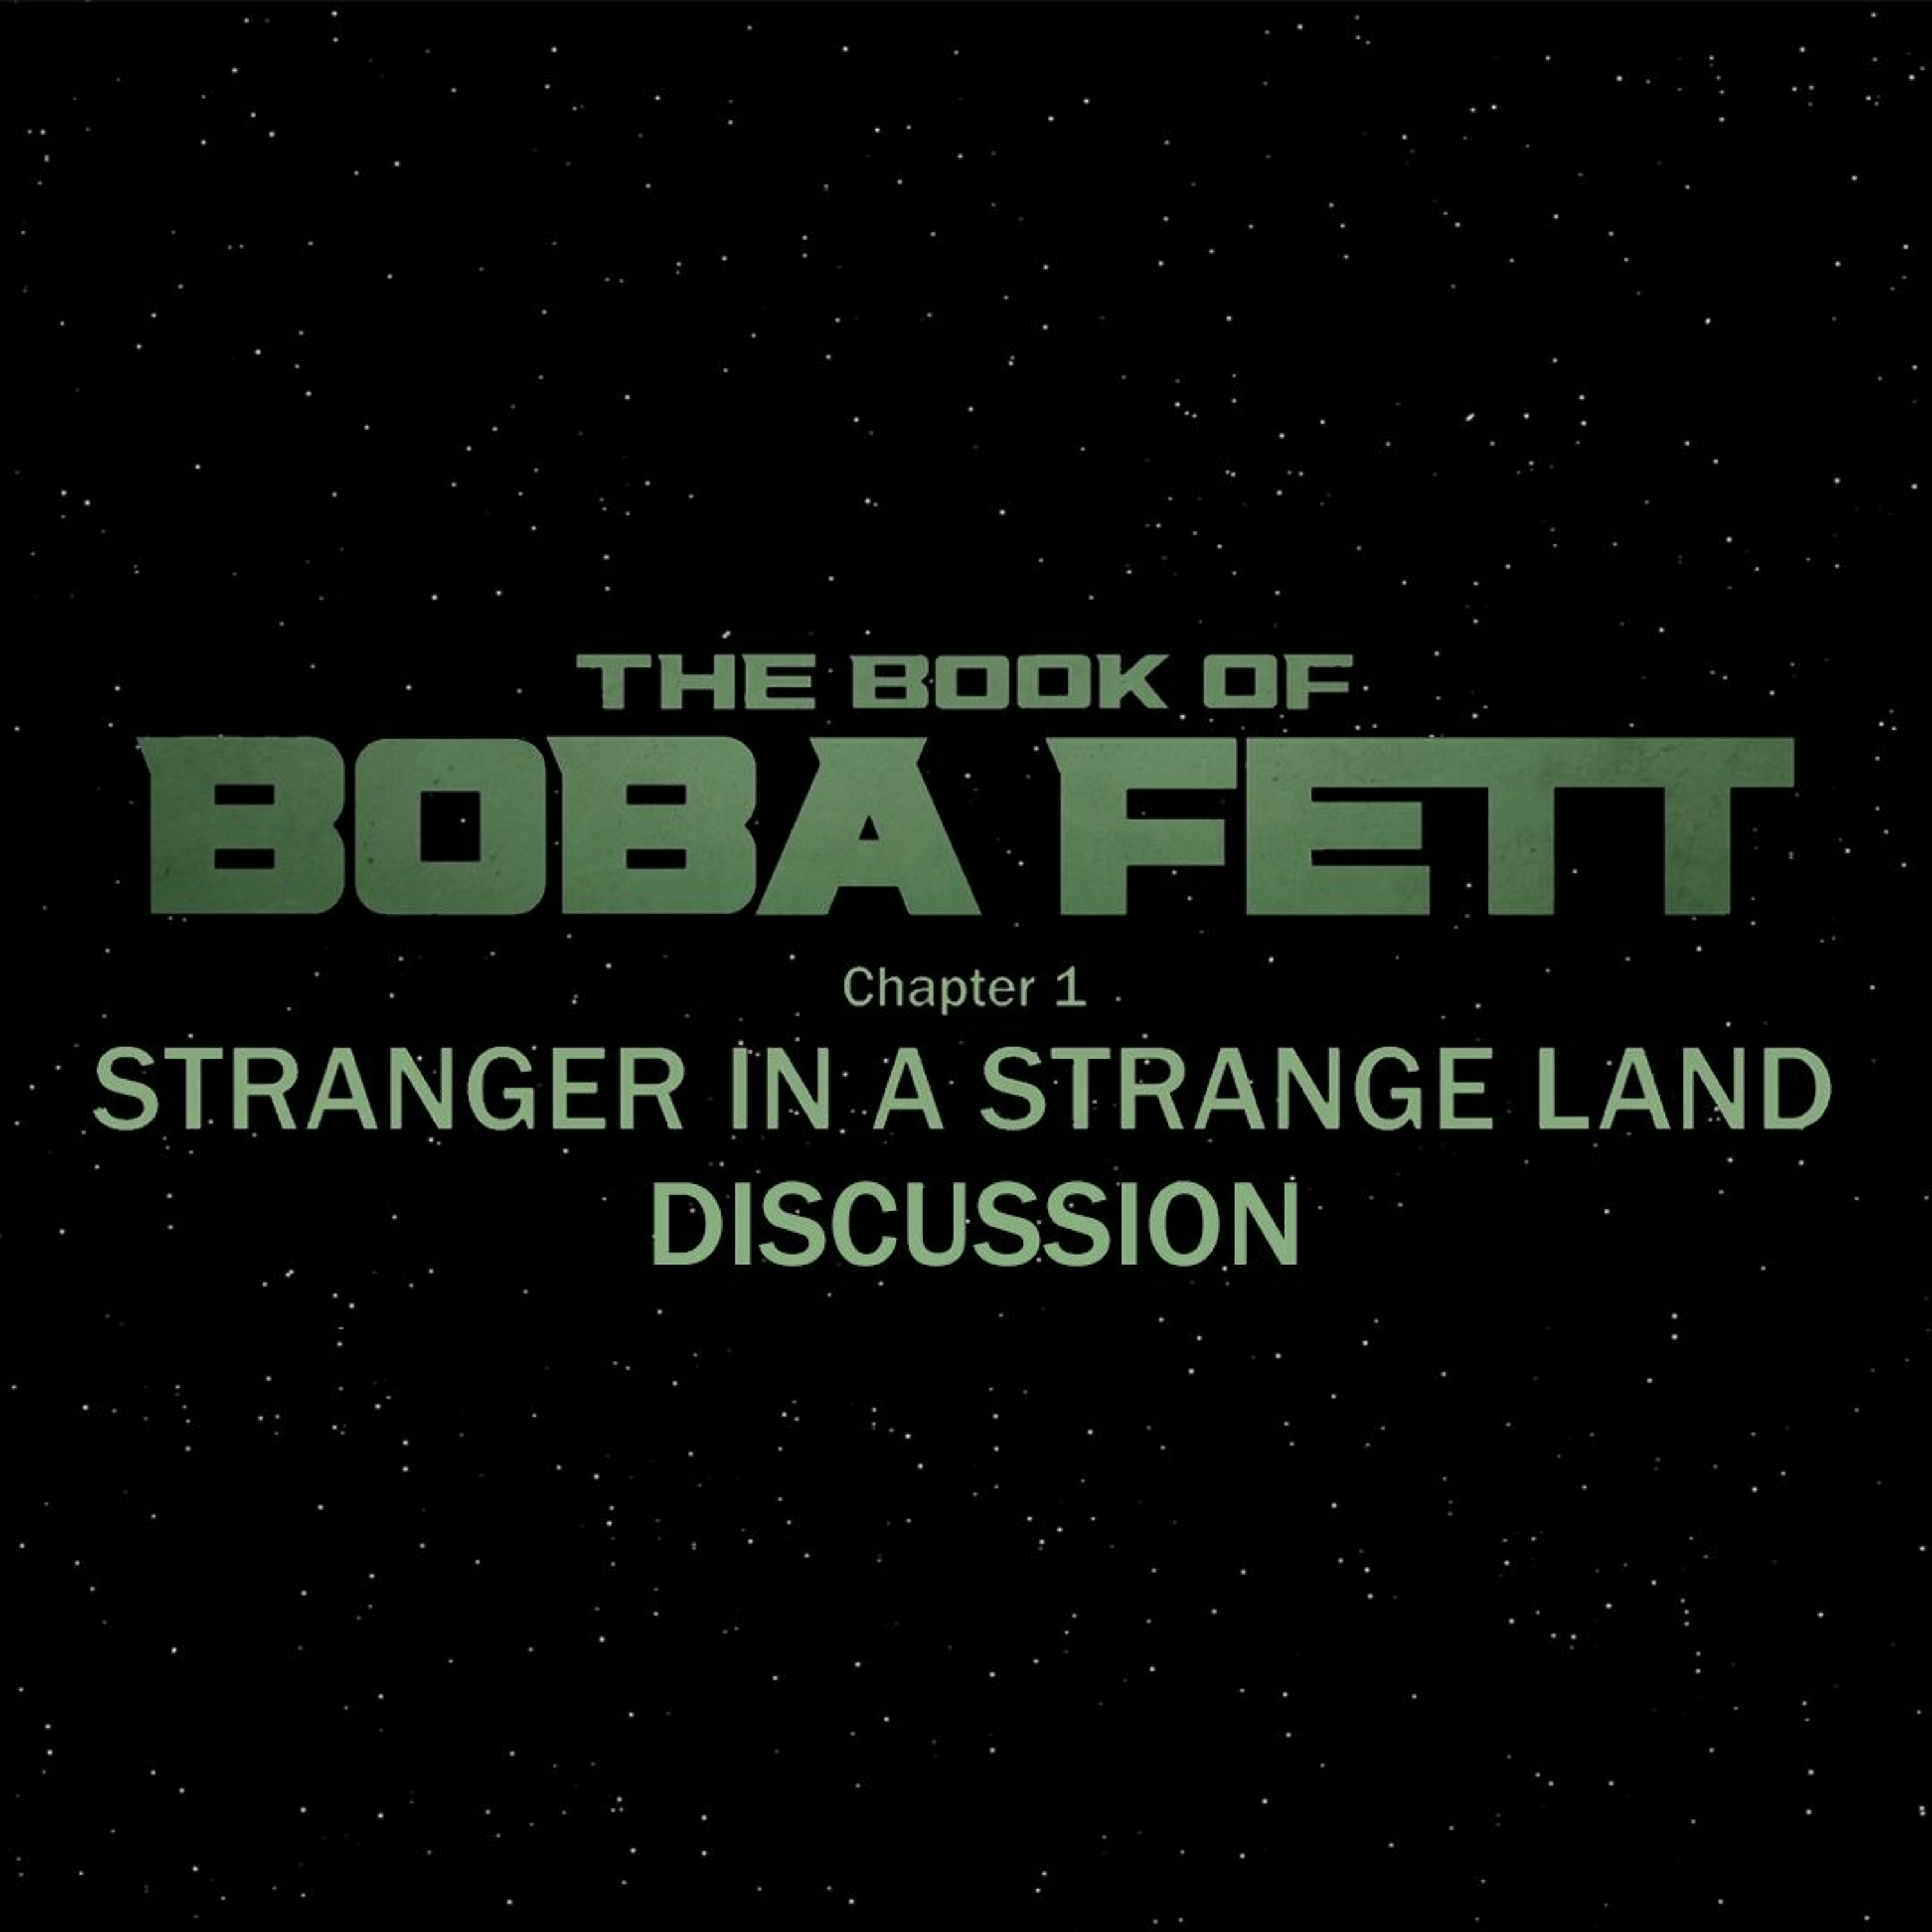 The Book of Boba Fett Chapter 1 - Stranger in a Strange Land